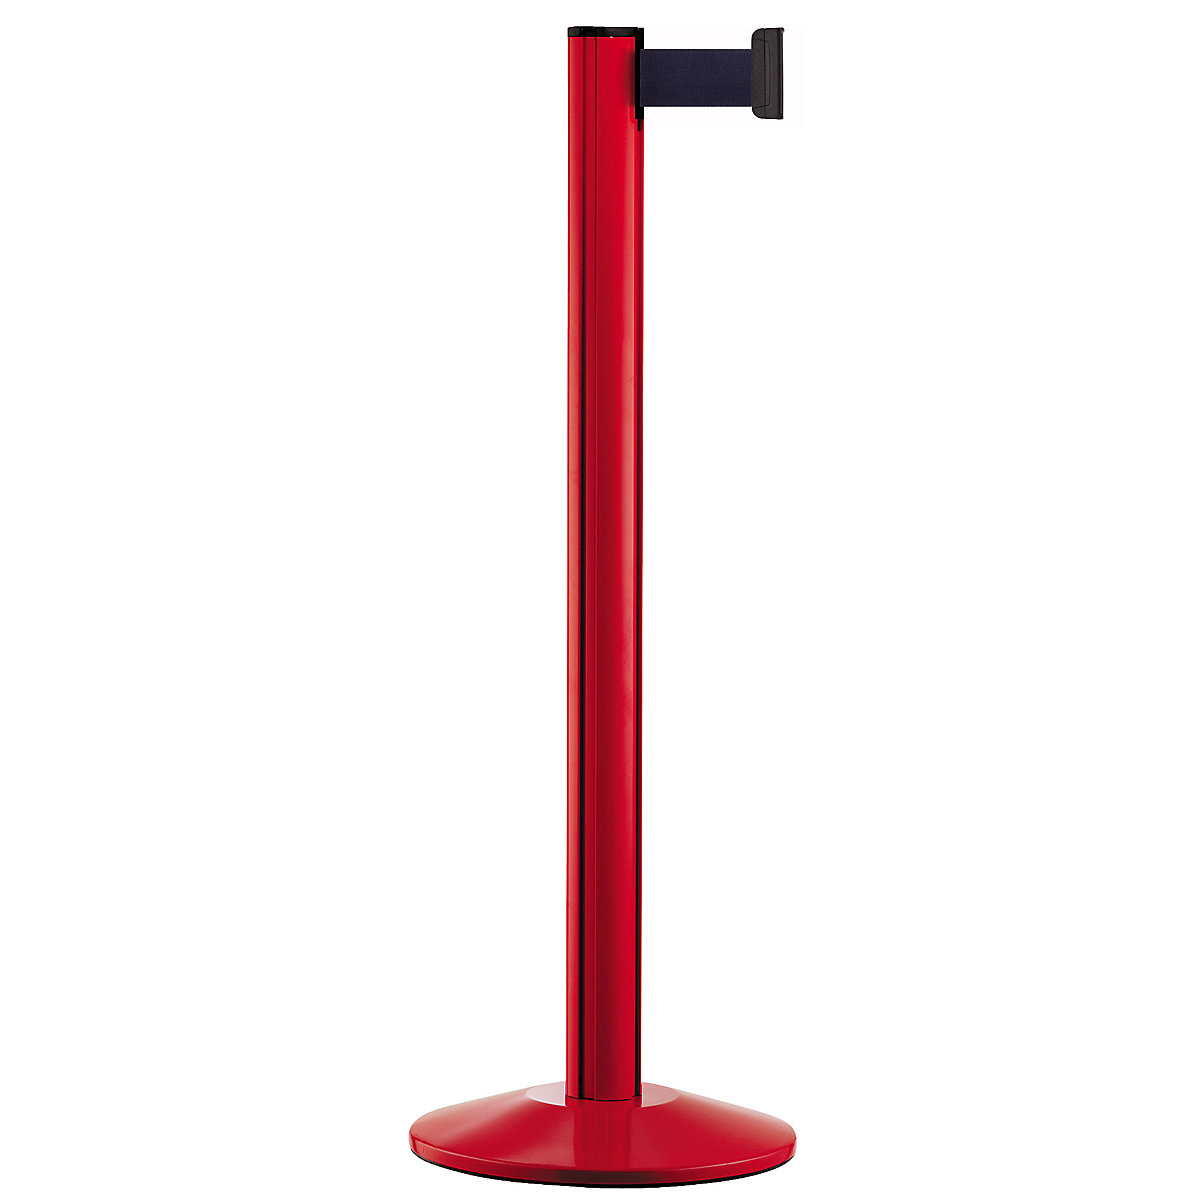 Belt post made of aluminium, post red, extends 2300 mm, belt colour dark blue-6